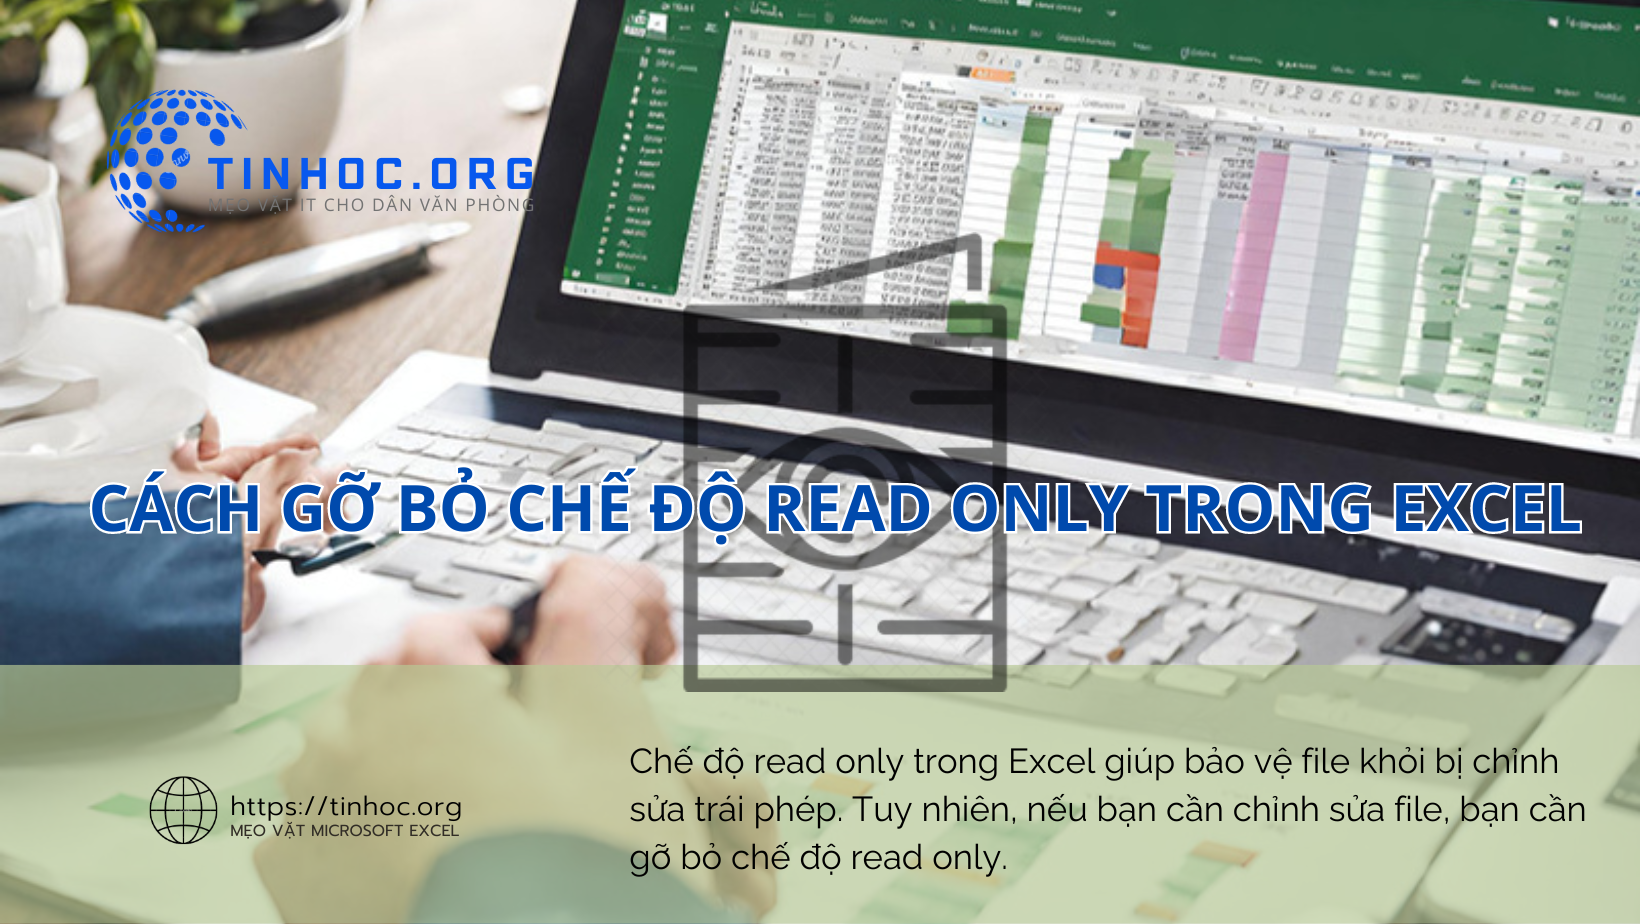 Cách gỡ bỏ chế độ read only trong Excel